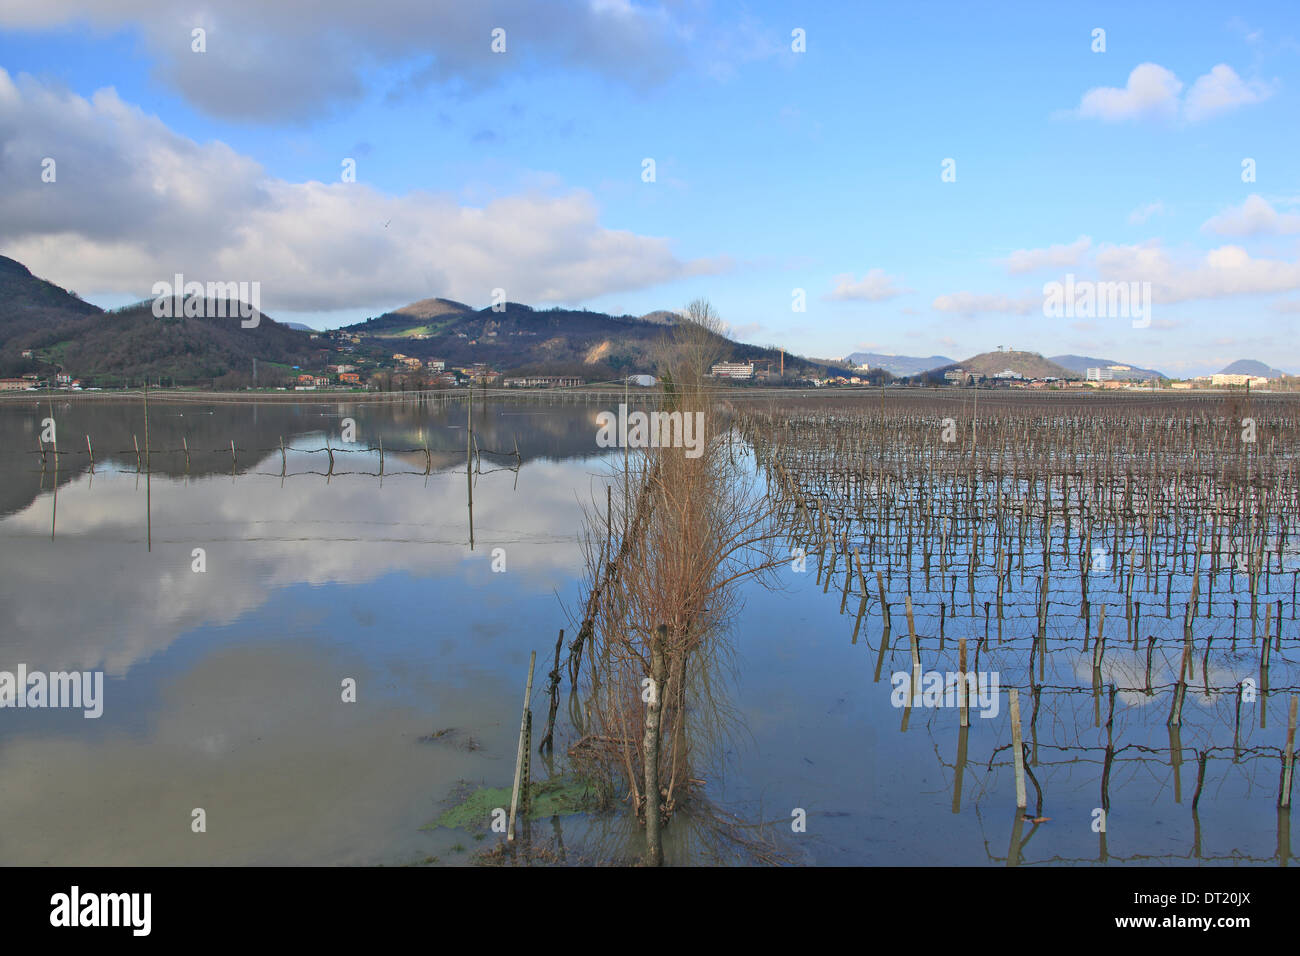 Veneto, Italie. 6e février 2014. Inondation. Dans la région de Veneto il a plu sans arrêt pendant 7 jours, aujourd'hui, le temps accordé un répit.Sur cette photo, les champs inondés Crédit : Realy Easy Star/Alamy Live News Banque D'Images